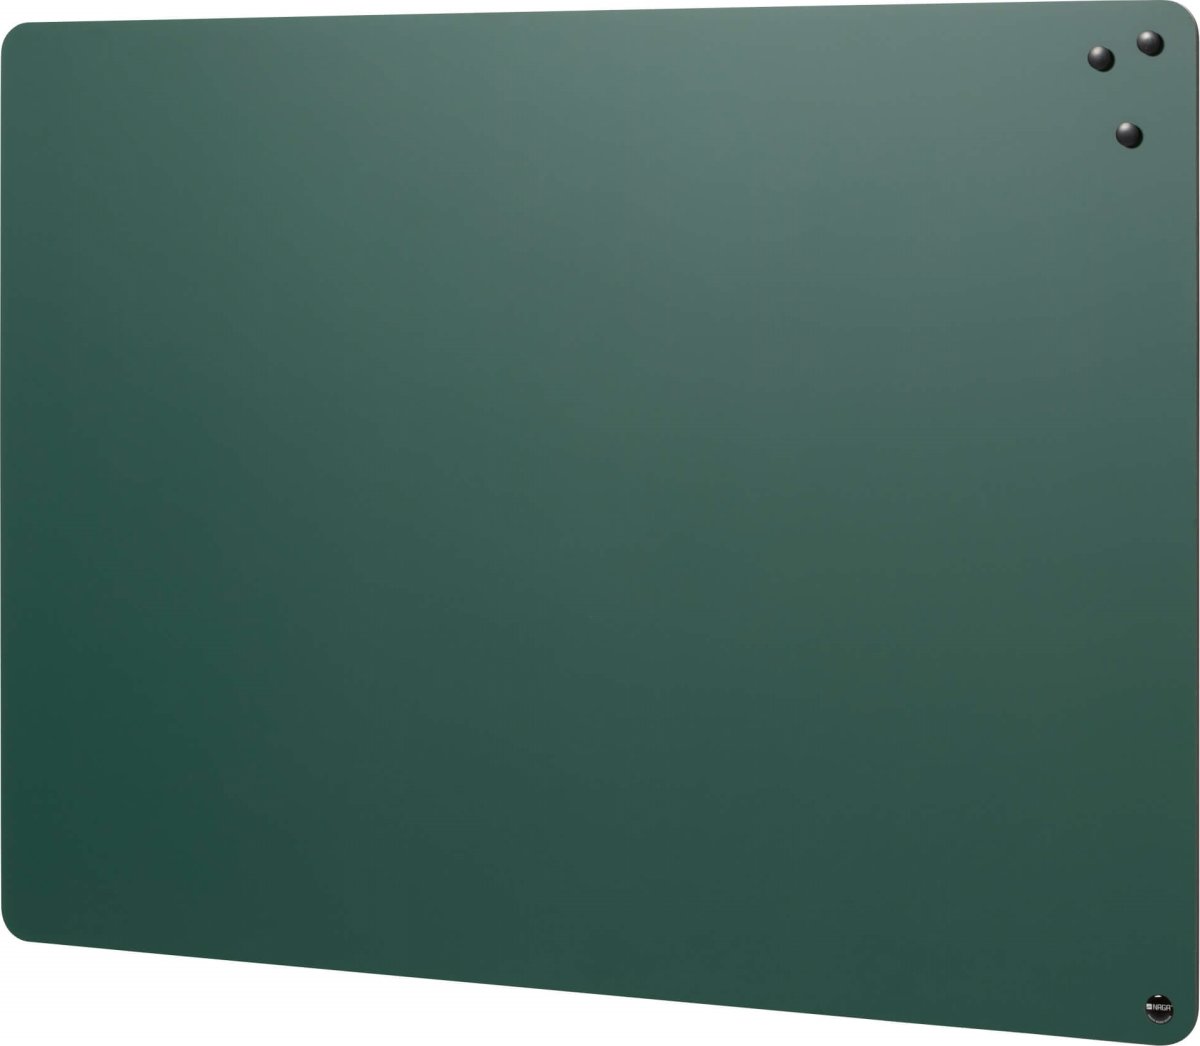 Naga magnetisk kridtavle uden ramme, 57x45cm, grøn